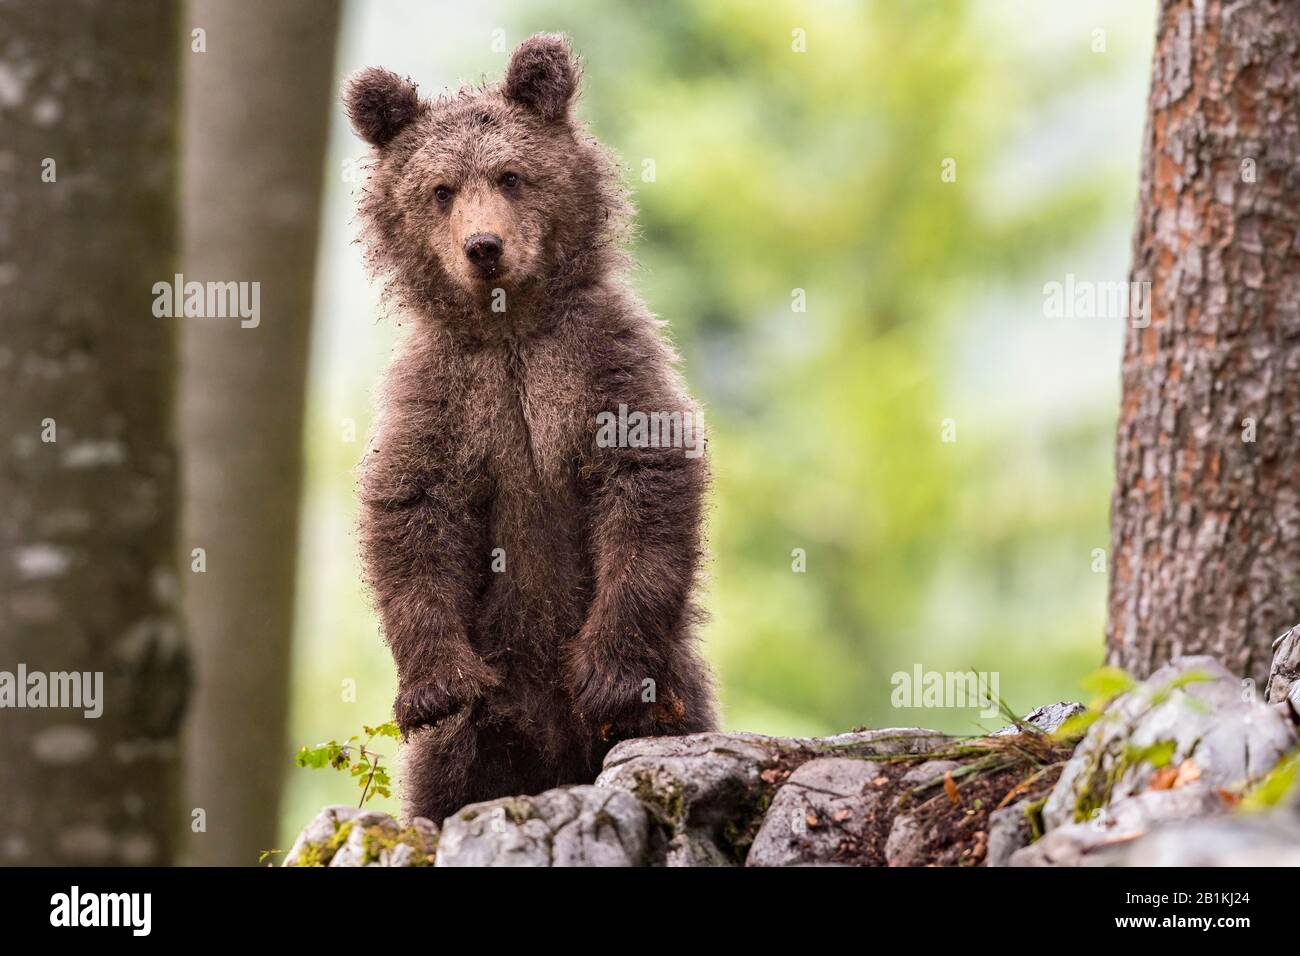 Ours brun européen (Ursus arctos arctos) debout dans la forêt, jeune animal aux yeux curieux, dans la nature, région de Notranjska, Alpes dinariques Banque D'Images